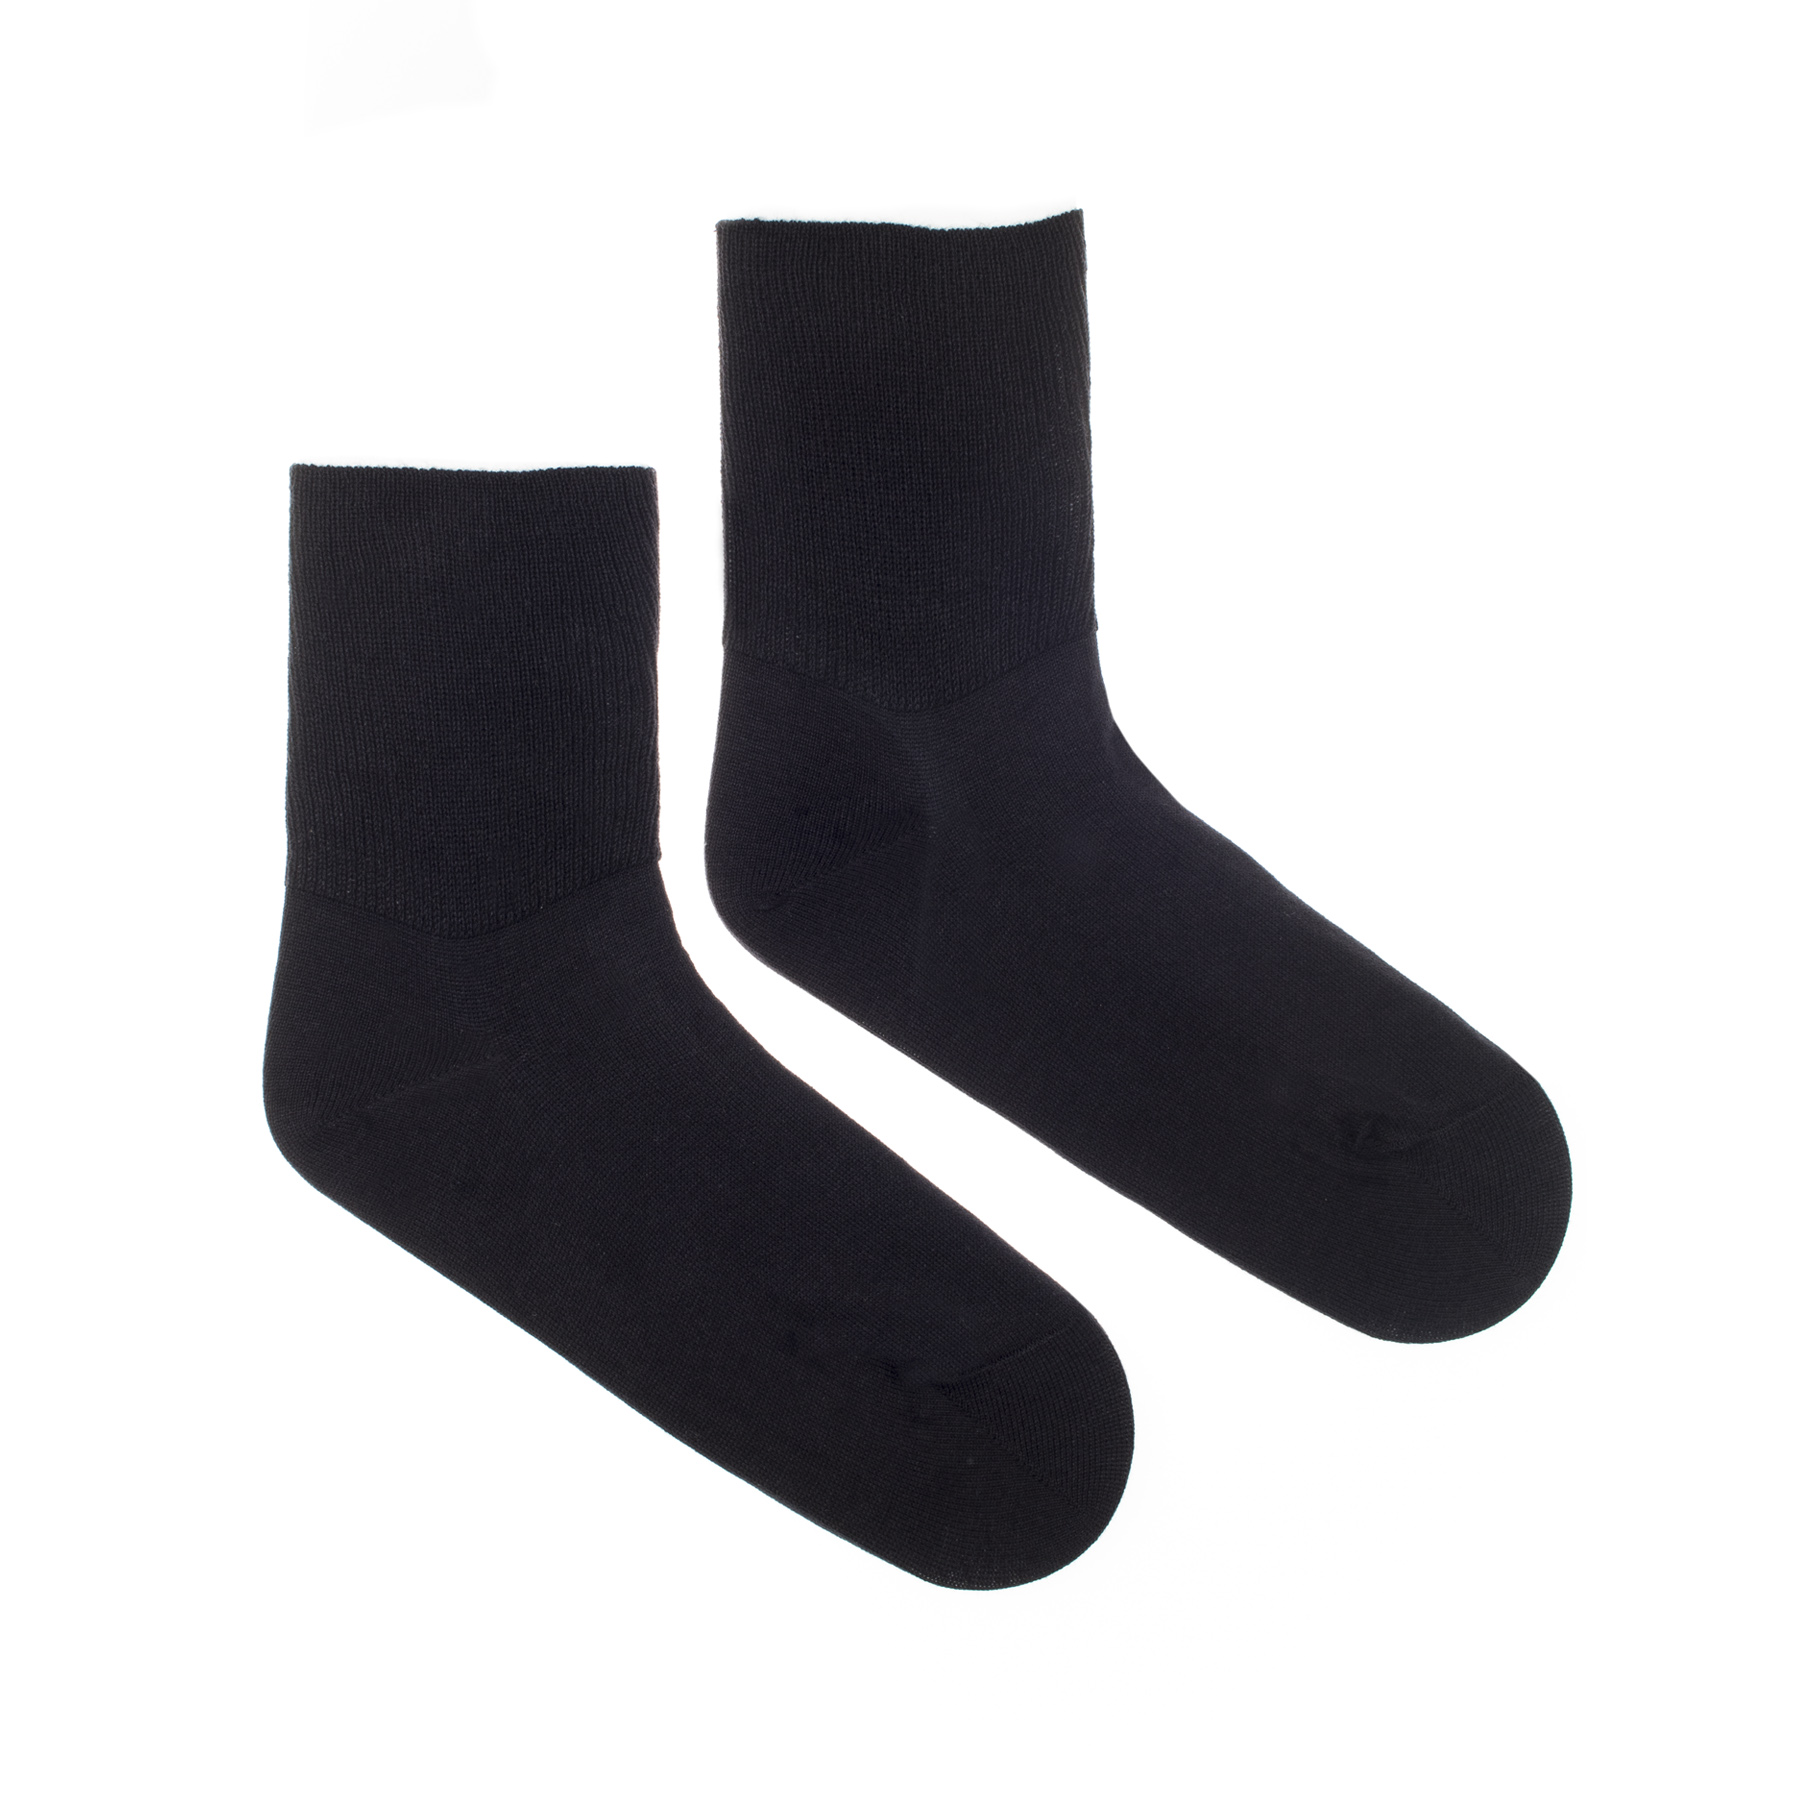 Ponožky Diabetické s vysokým lemem černé Fusakle